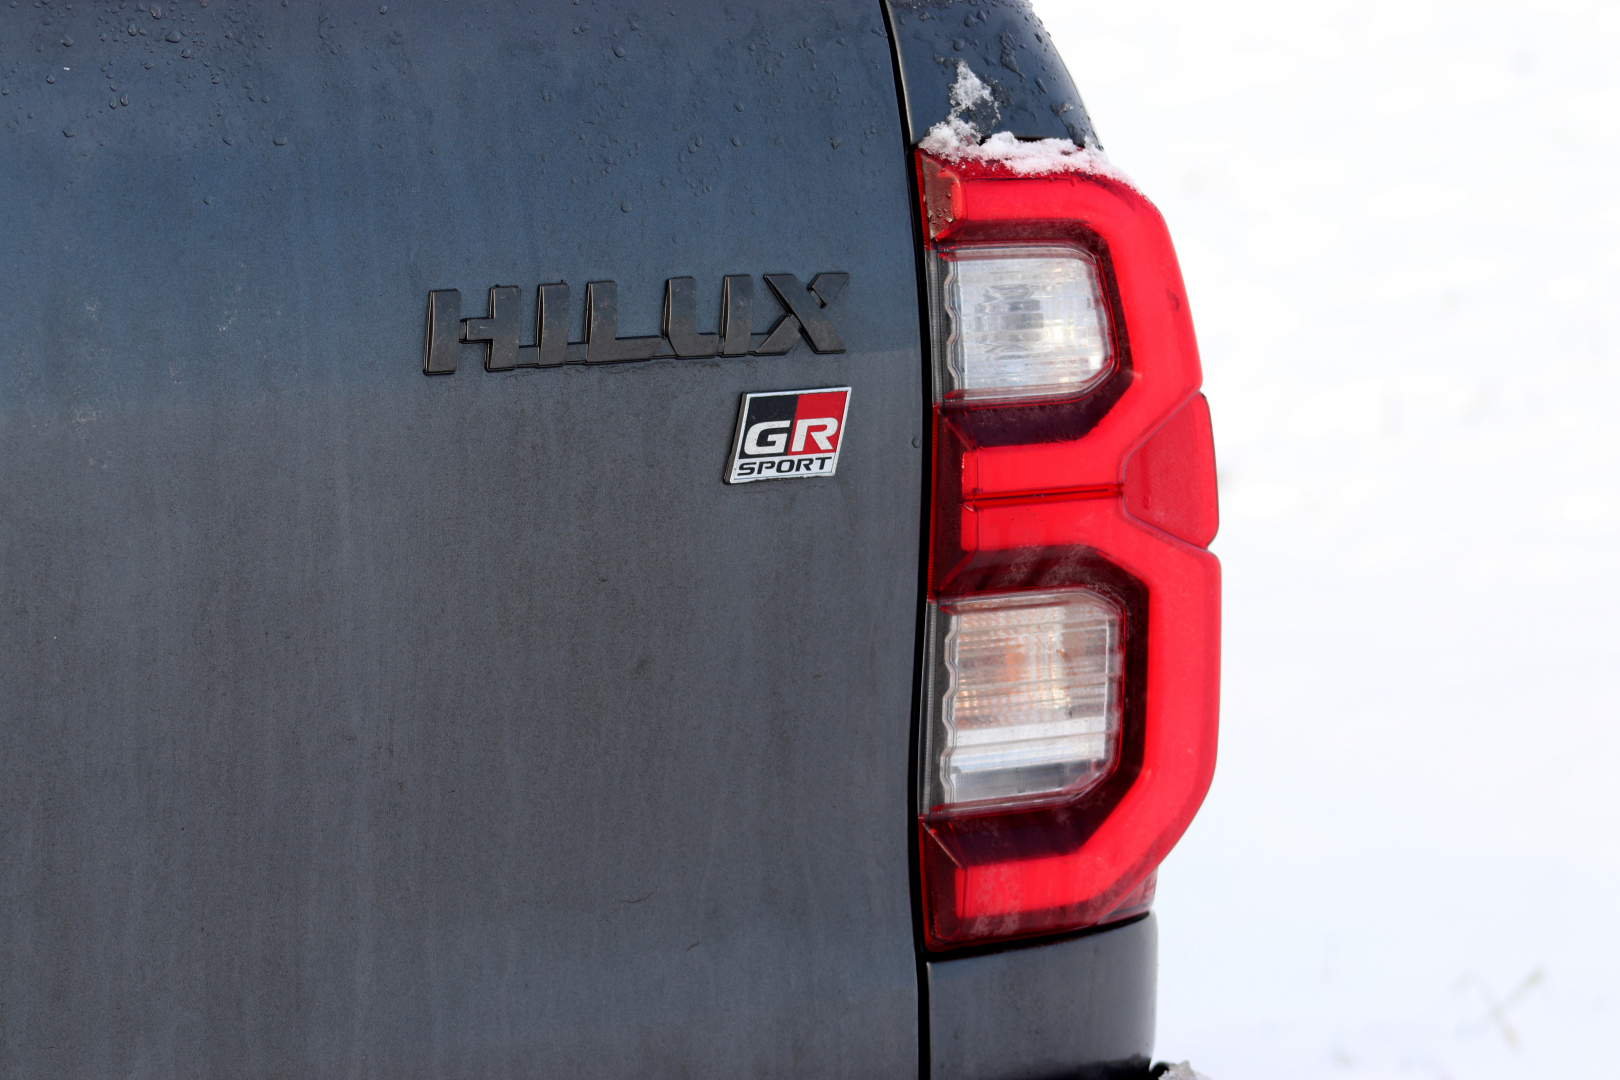 Emblém GR Sport naleznete i na zádi vozu.